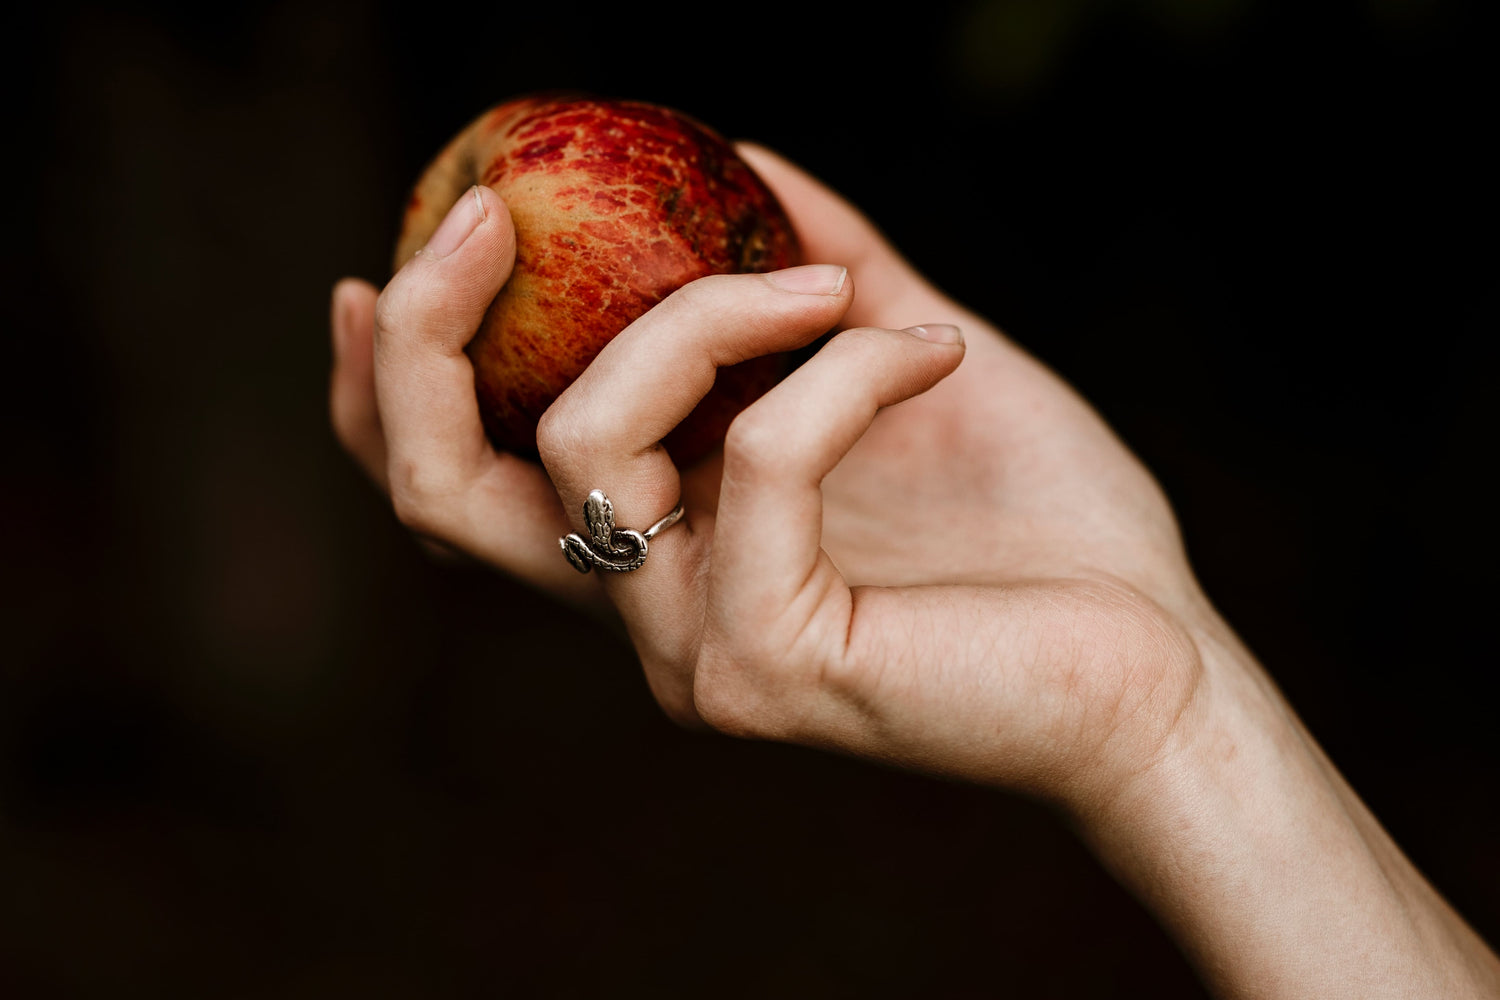 Frauenhand mit Schlangenring und einem roten Apfel